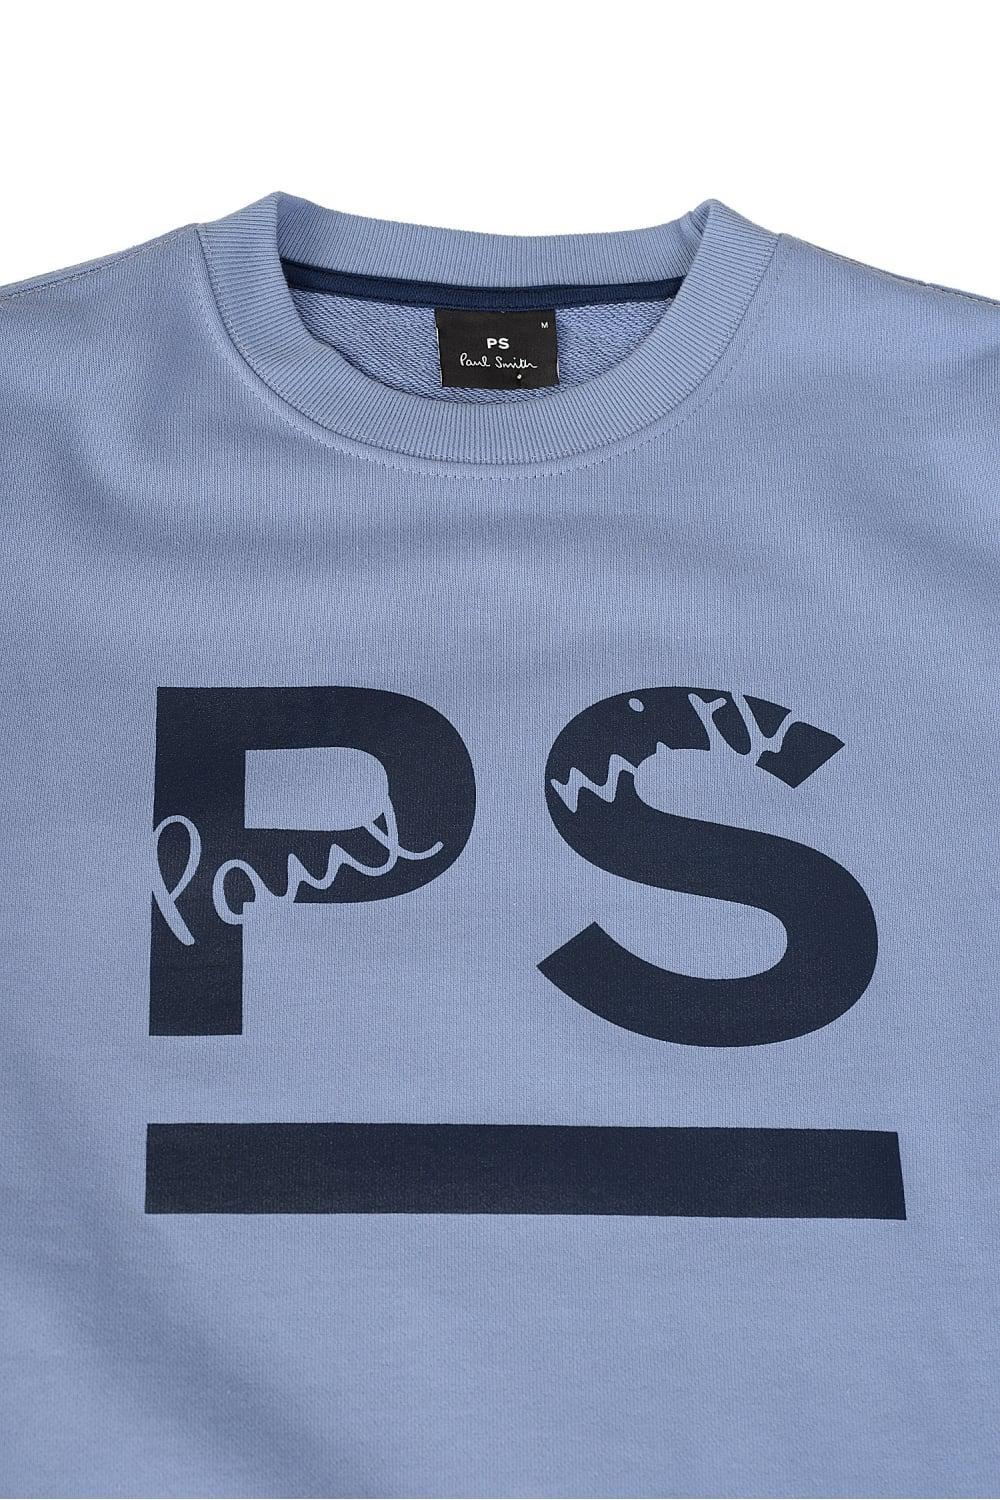 Blue PS Logo - Paul Smith Ps Logo Sweatshirt Blue in Blue for Men - Lyst